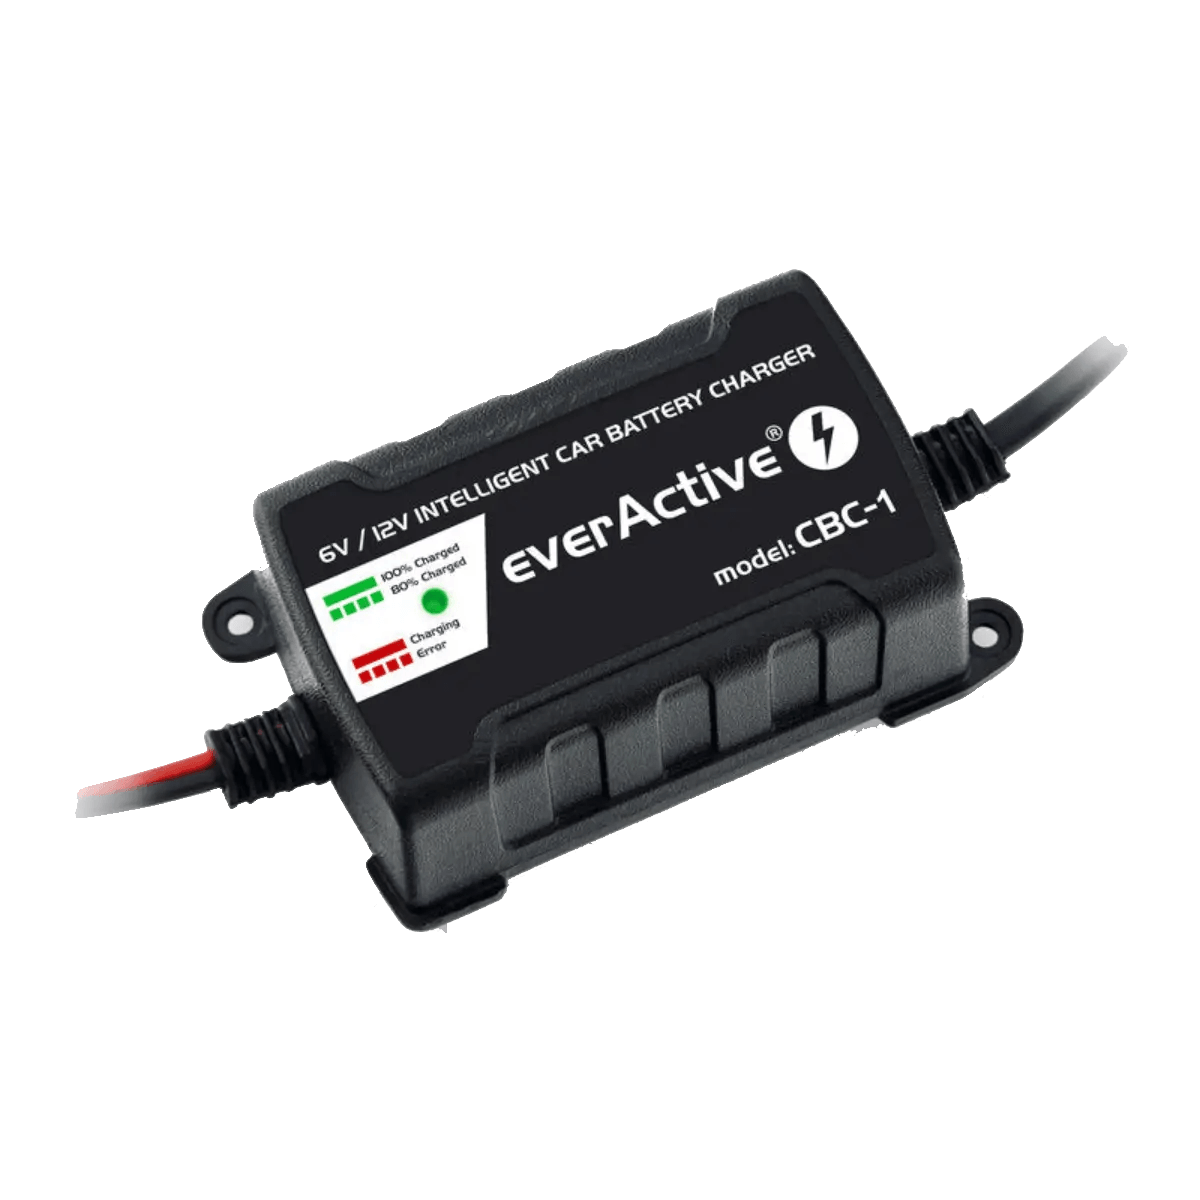 Chargeur intelligent pour batterie de véhicules 6V et 12V